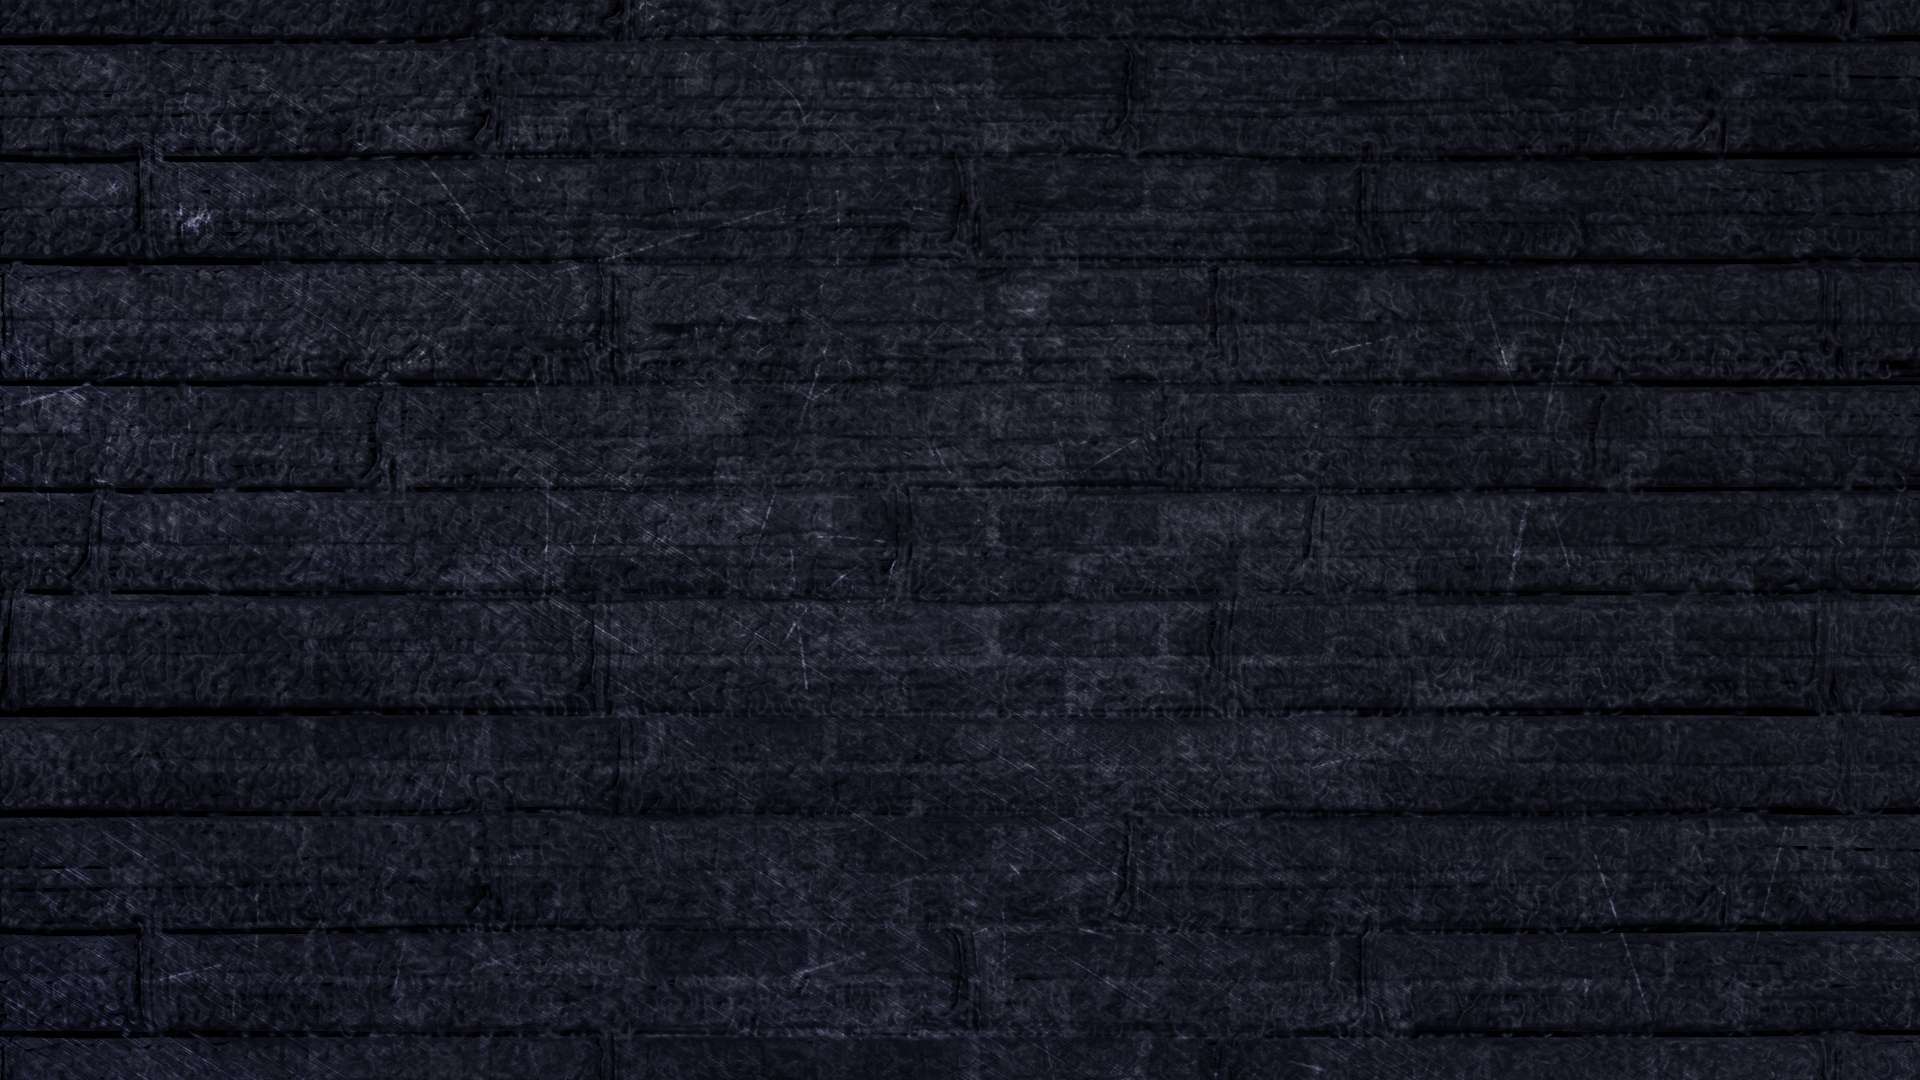 48 Black Hd Wallpapers 1080p Wallpapersafari